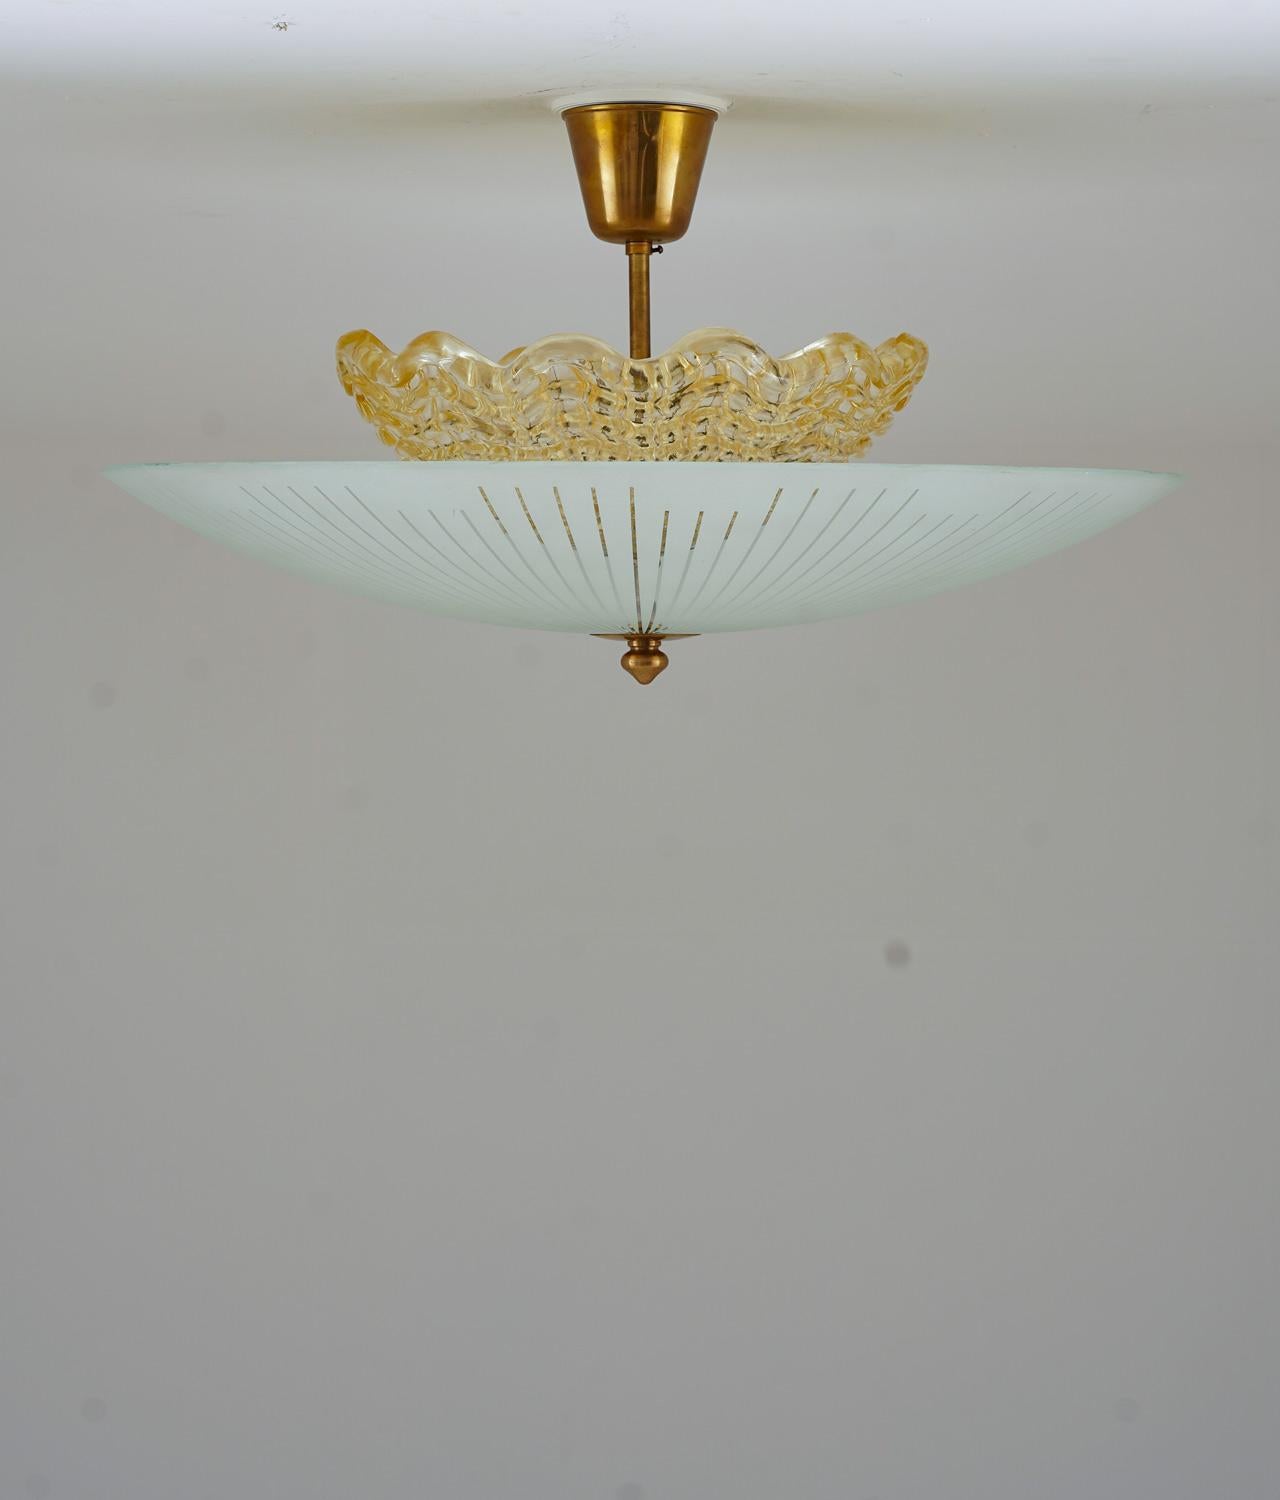 Magnifique boîte d'encastrement en laiton et verre dépoli, produite par Orrefors en Suède vers 1950.
La lampe se compose d'un abat-jour intérieur de couleur ambre, cachant trois ampoules. L'abat-jour intérieur est entouré d'un grand abat-jour